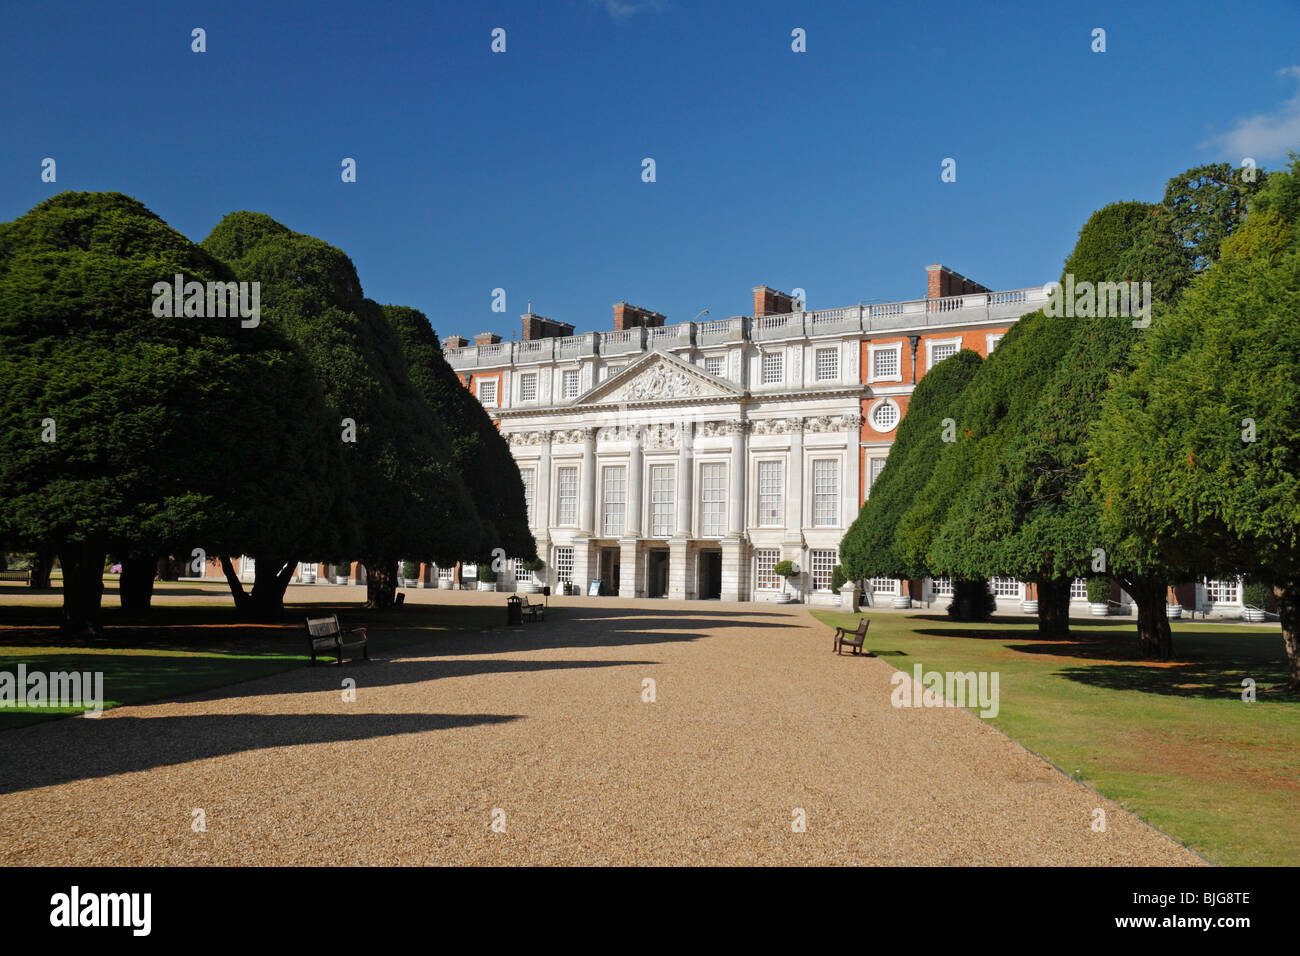 Sehen Sie die Ost-Gärten in Richtung der Ostfassade des Hampton Court Palace, Richmond Upon Thames, England. Stockfoto